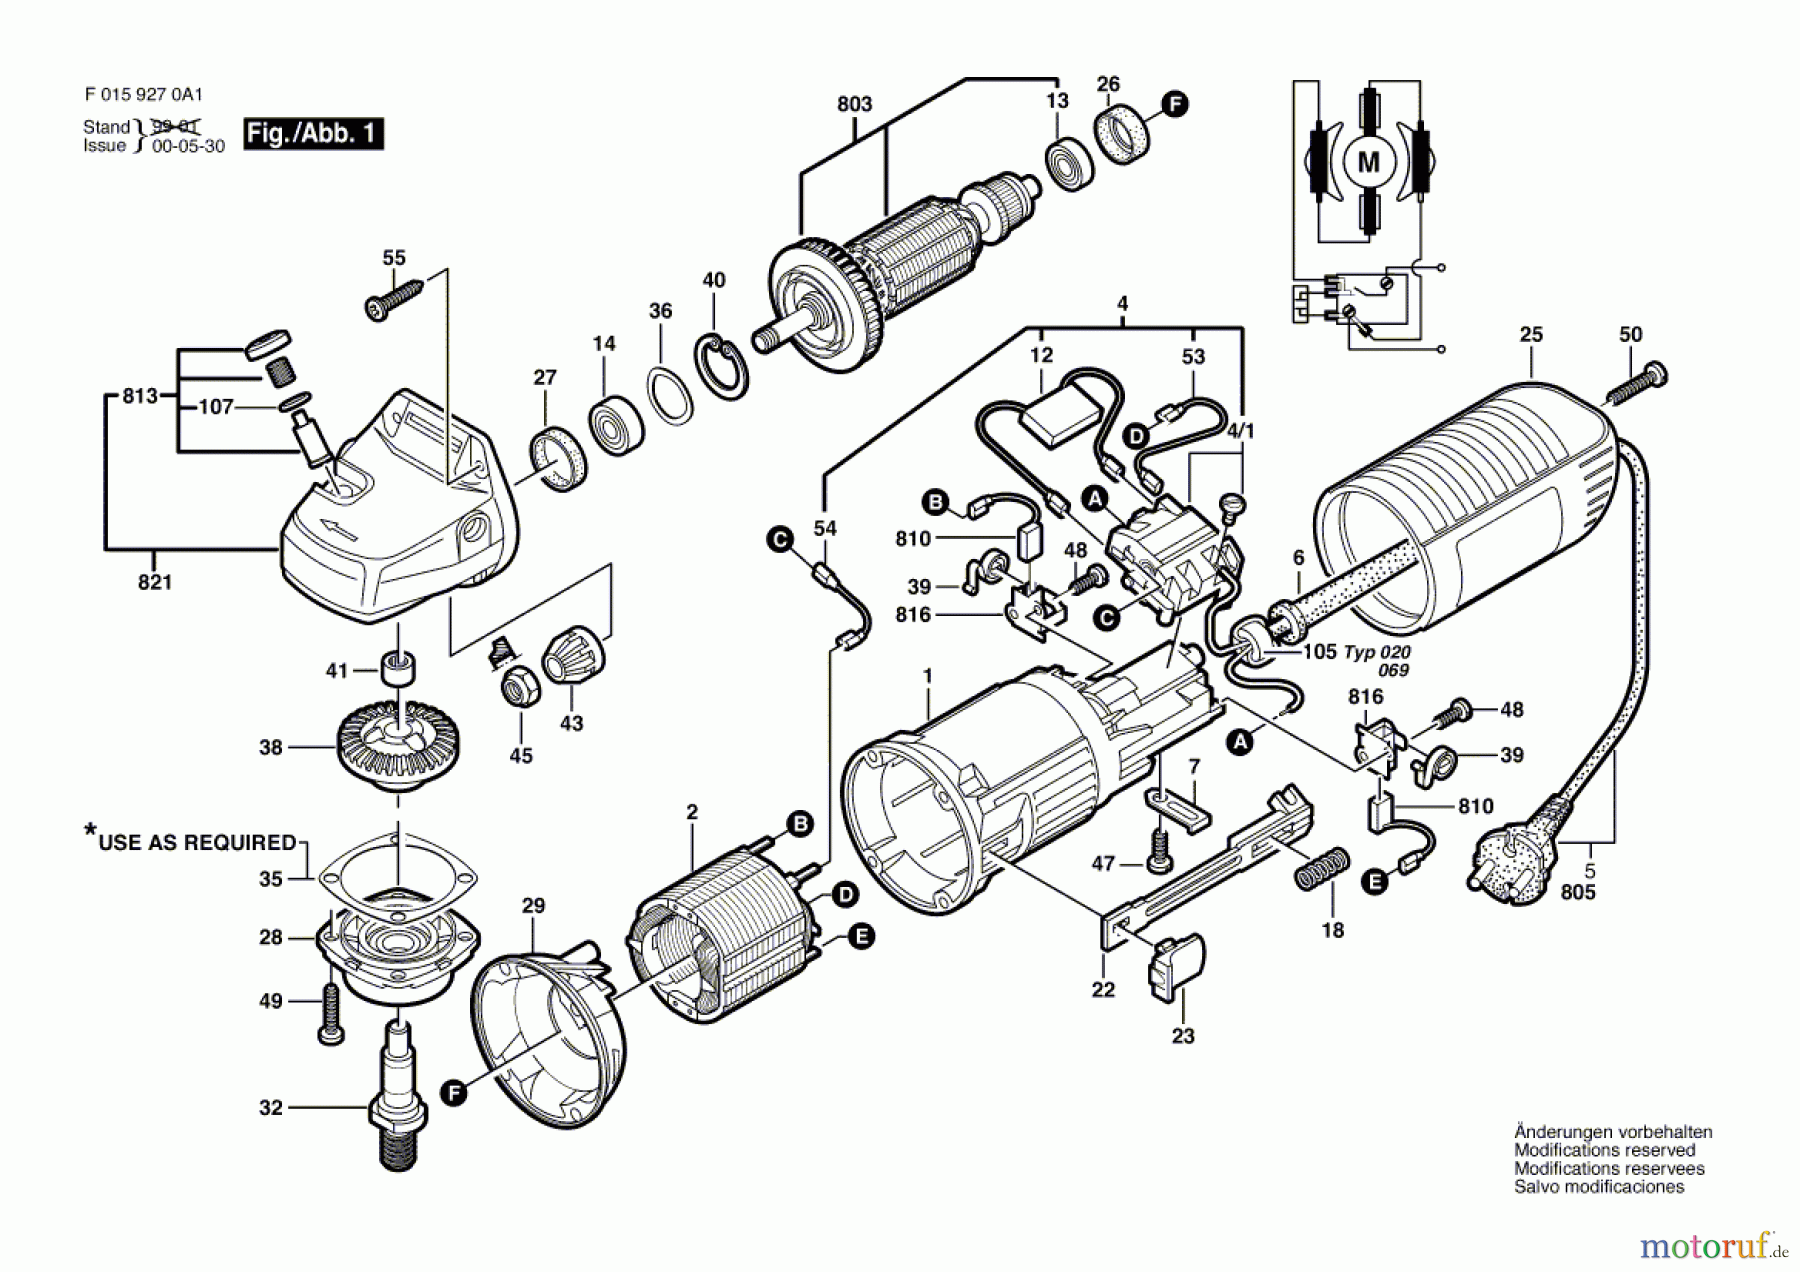  Bosch Werkzeug Winkelschleifer 9270 A1 Seite 1